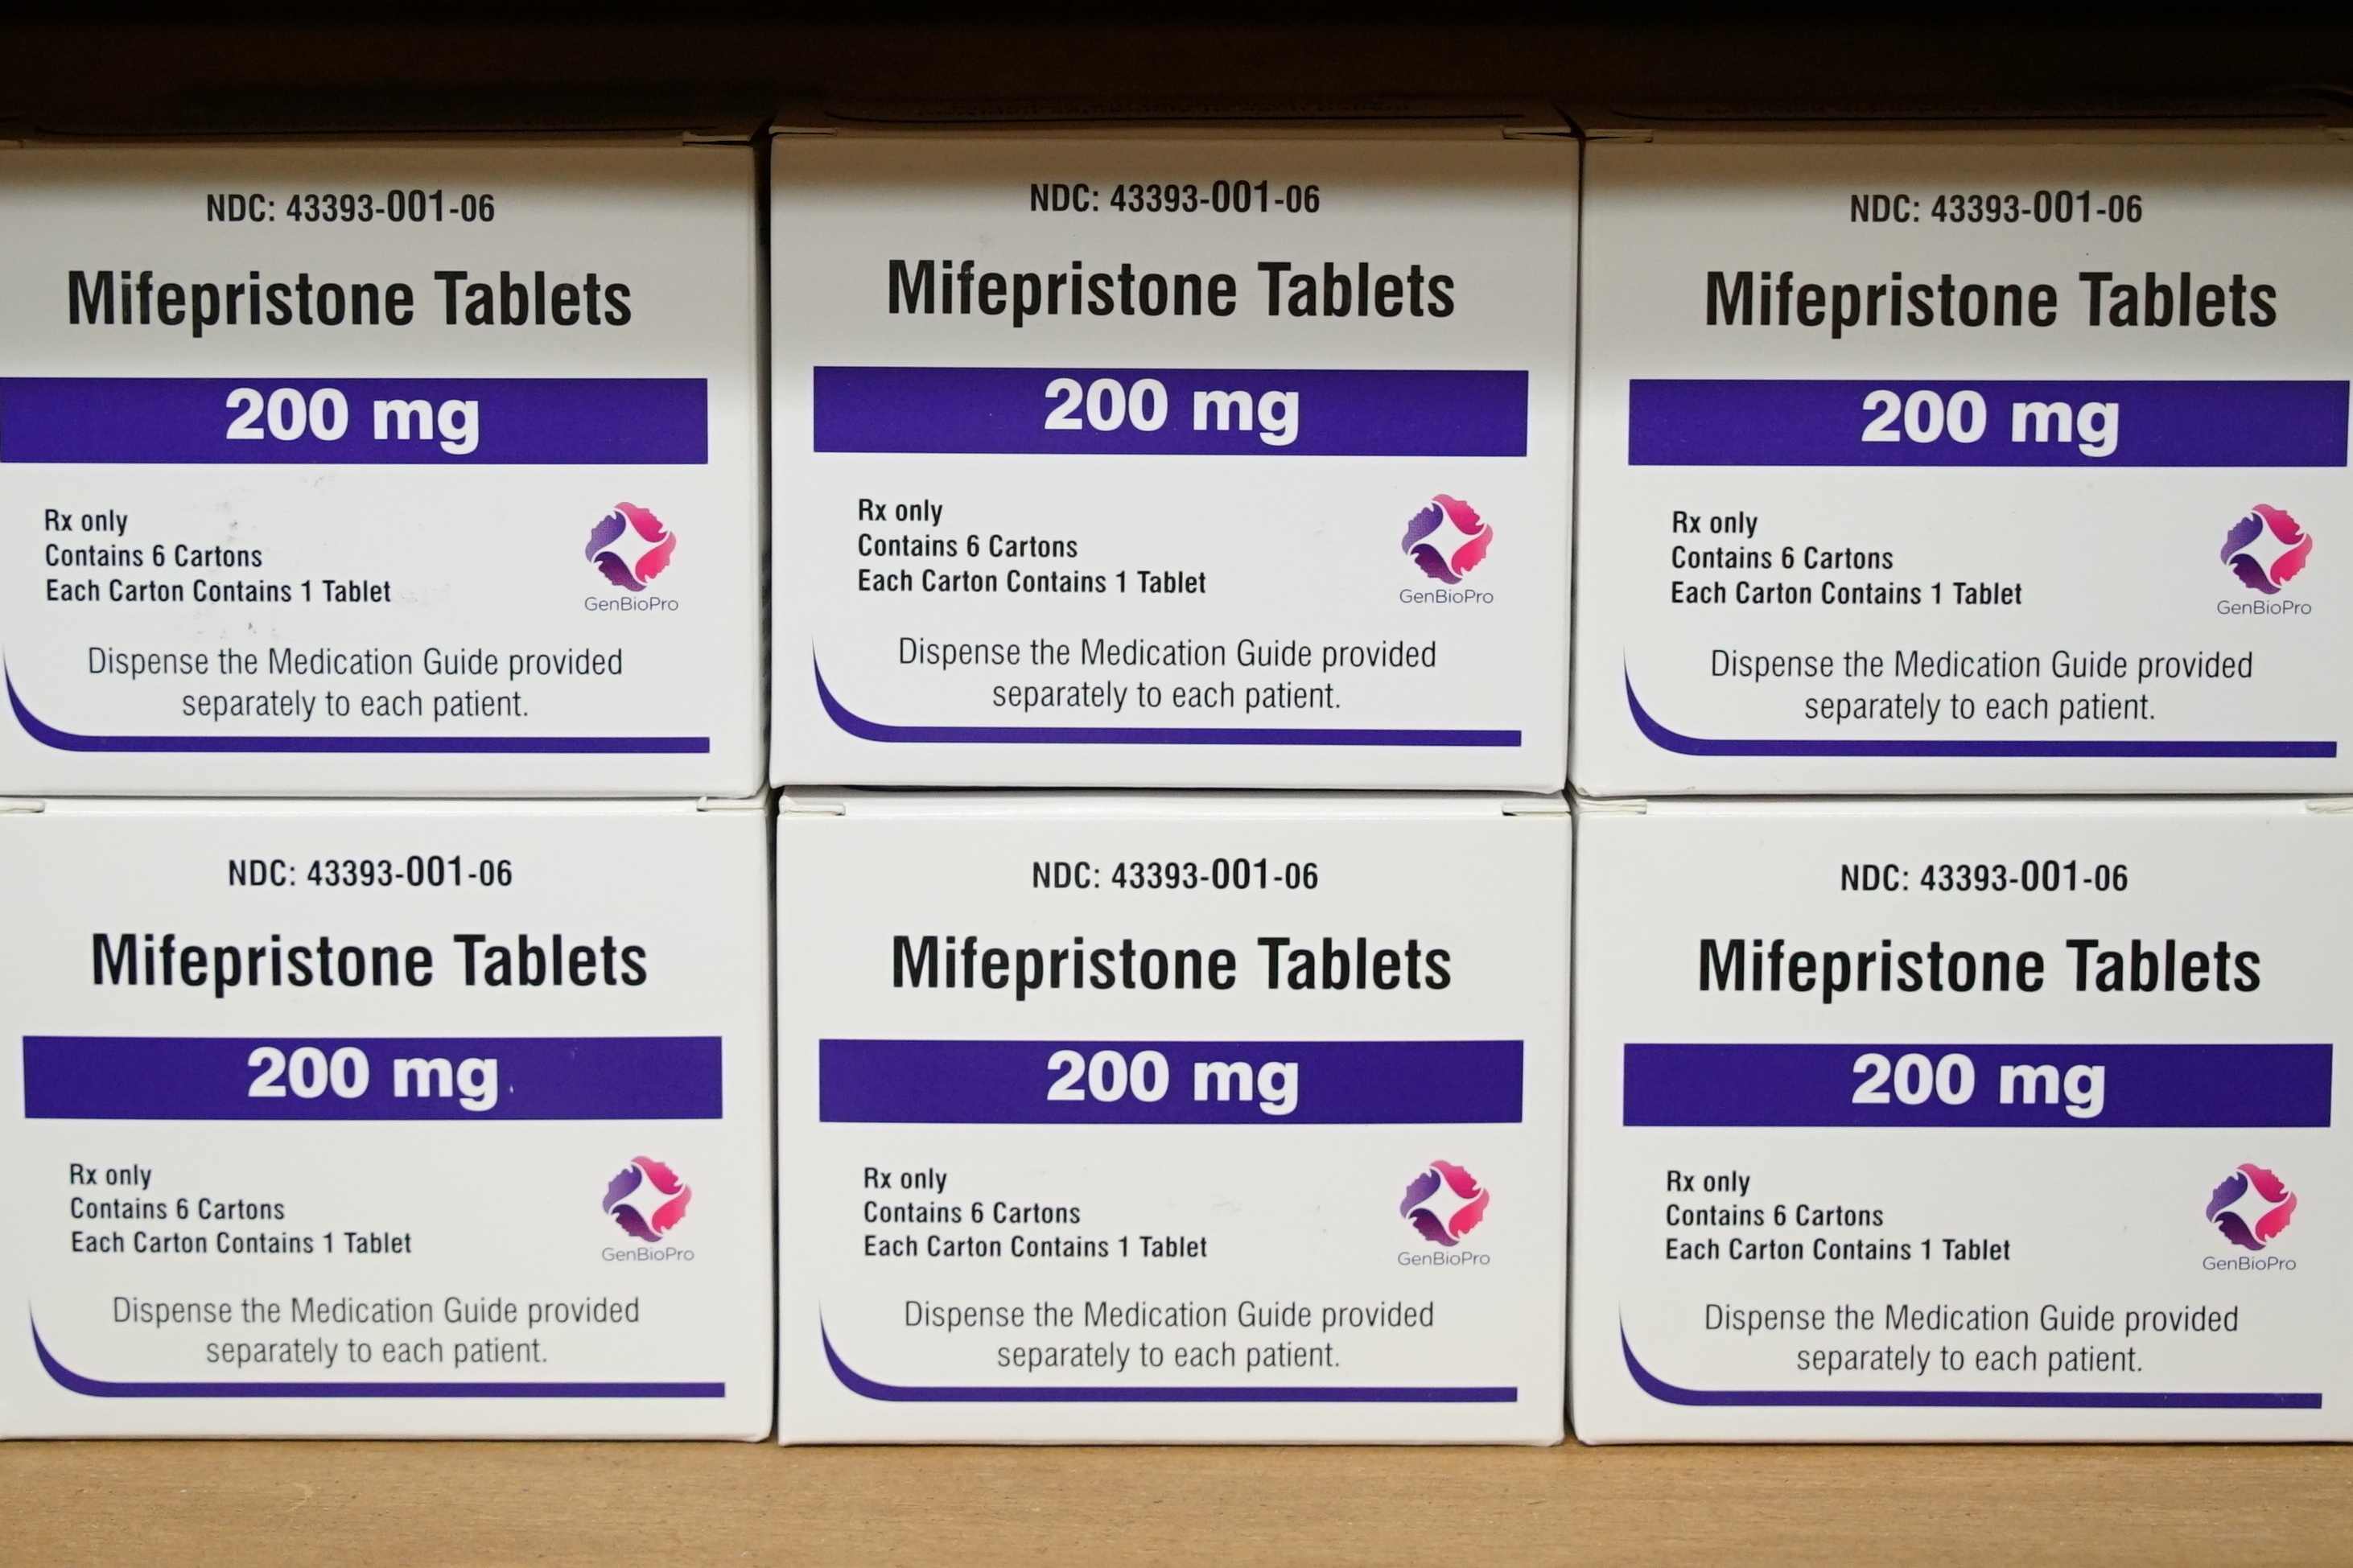 Estados Unidos autoriza la dispensación de píldoras abortivas en farmacias  | Salud